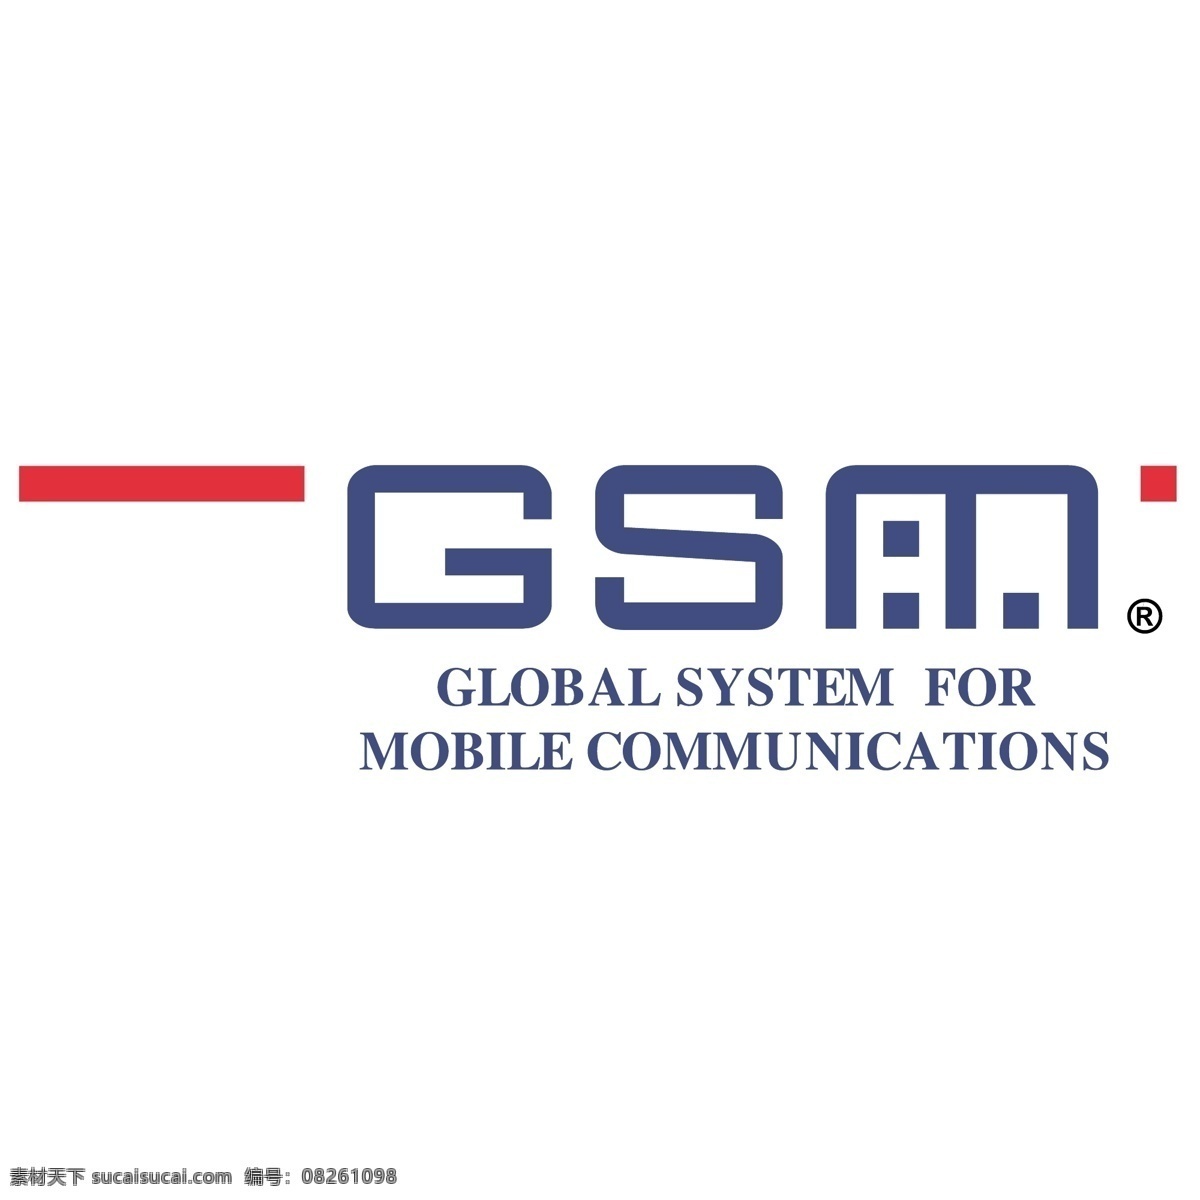 gsm 99 矢量标志下载 免费矢量标识 商标 品牌标识 标识 矢量 免费 品牌 公司 白色